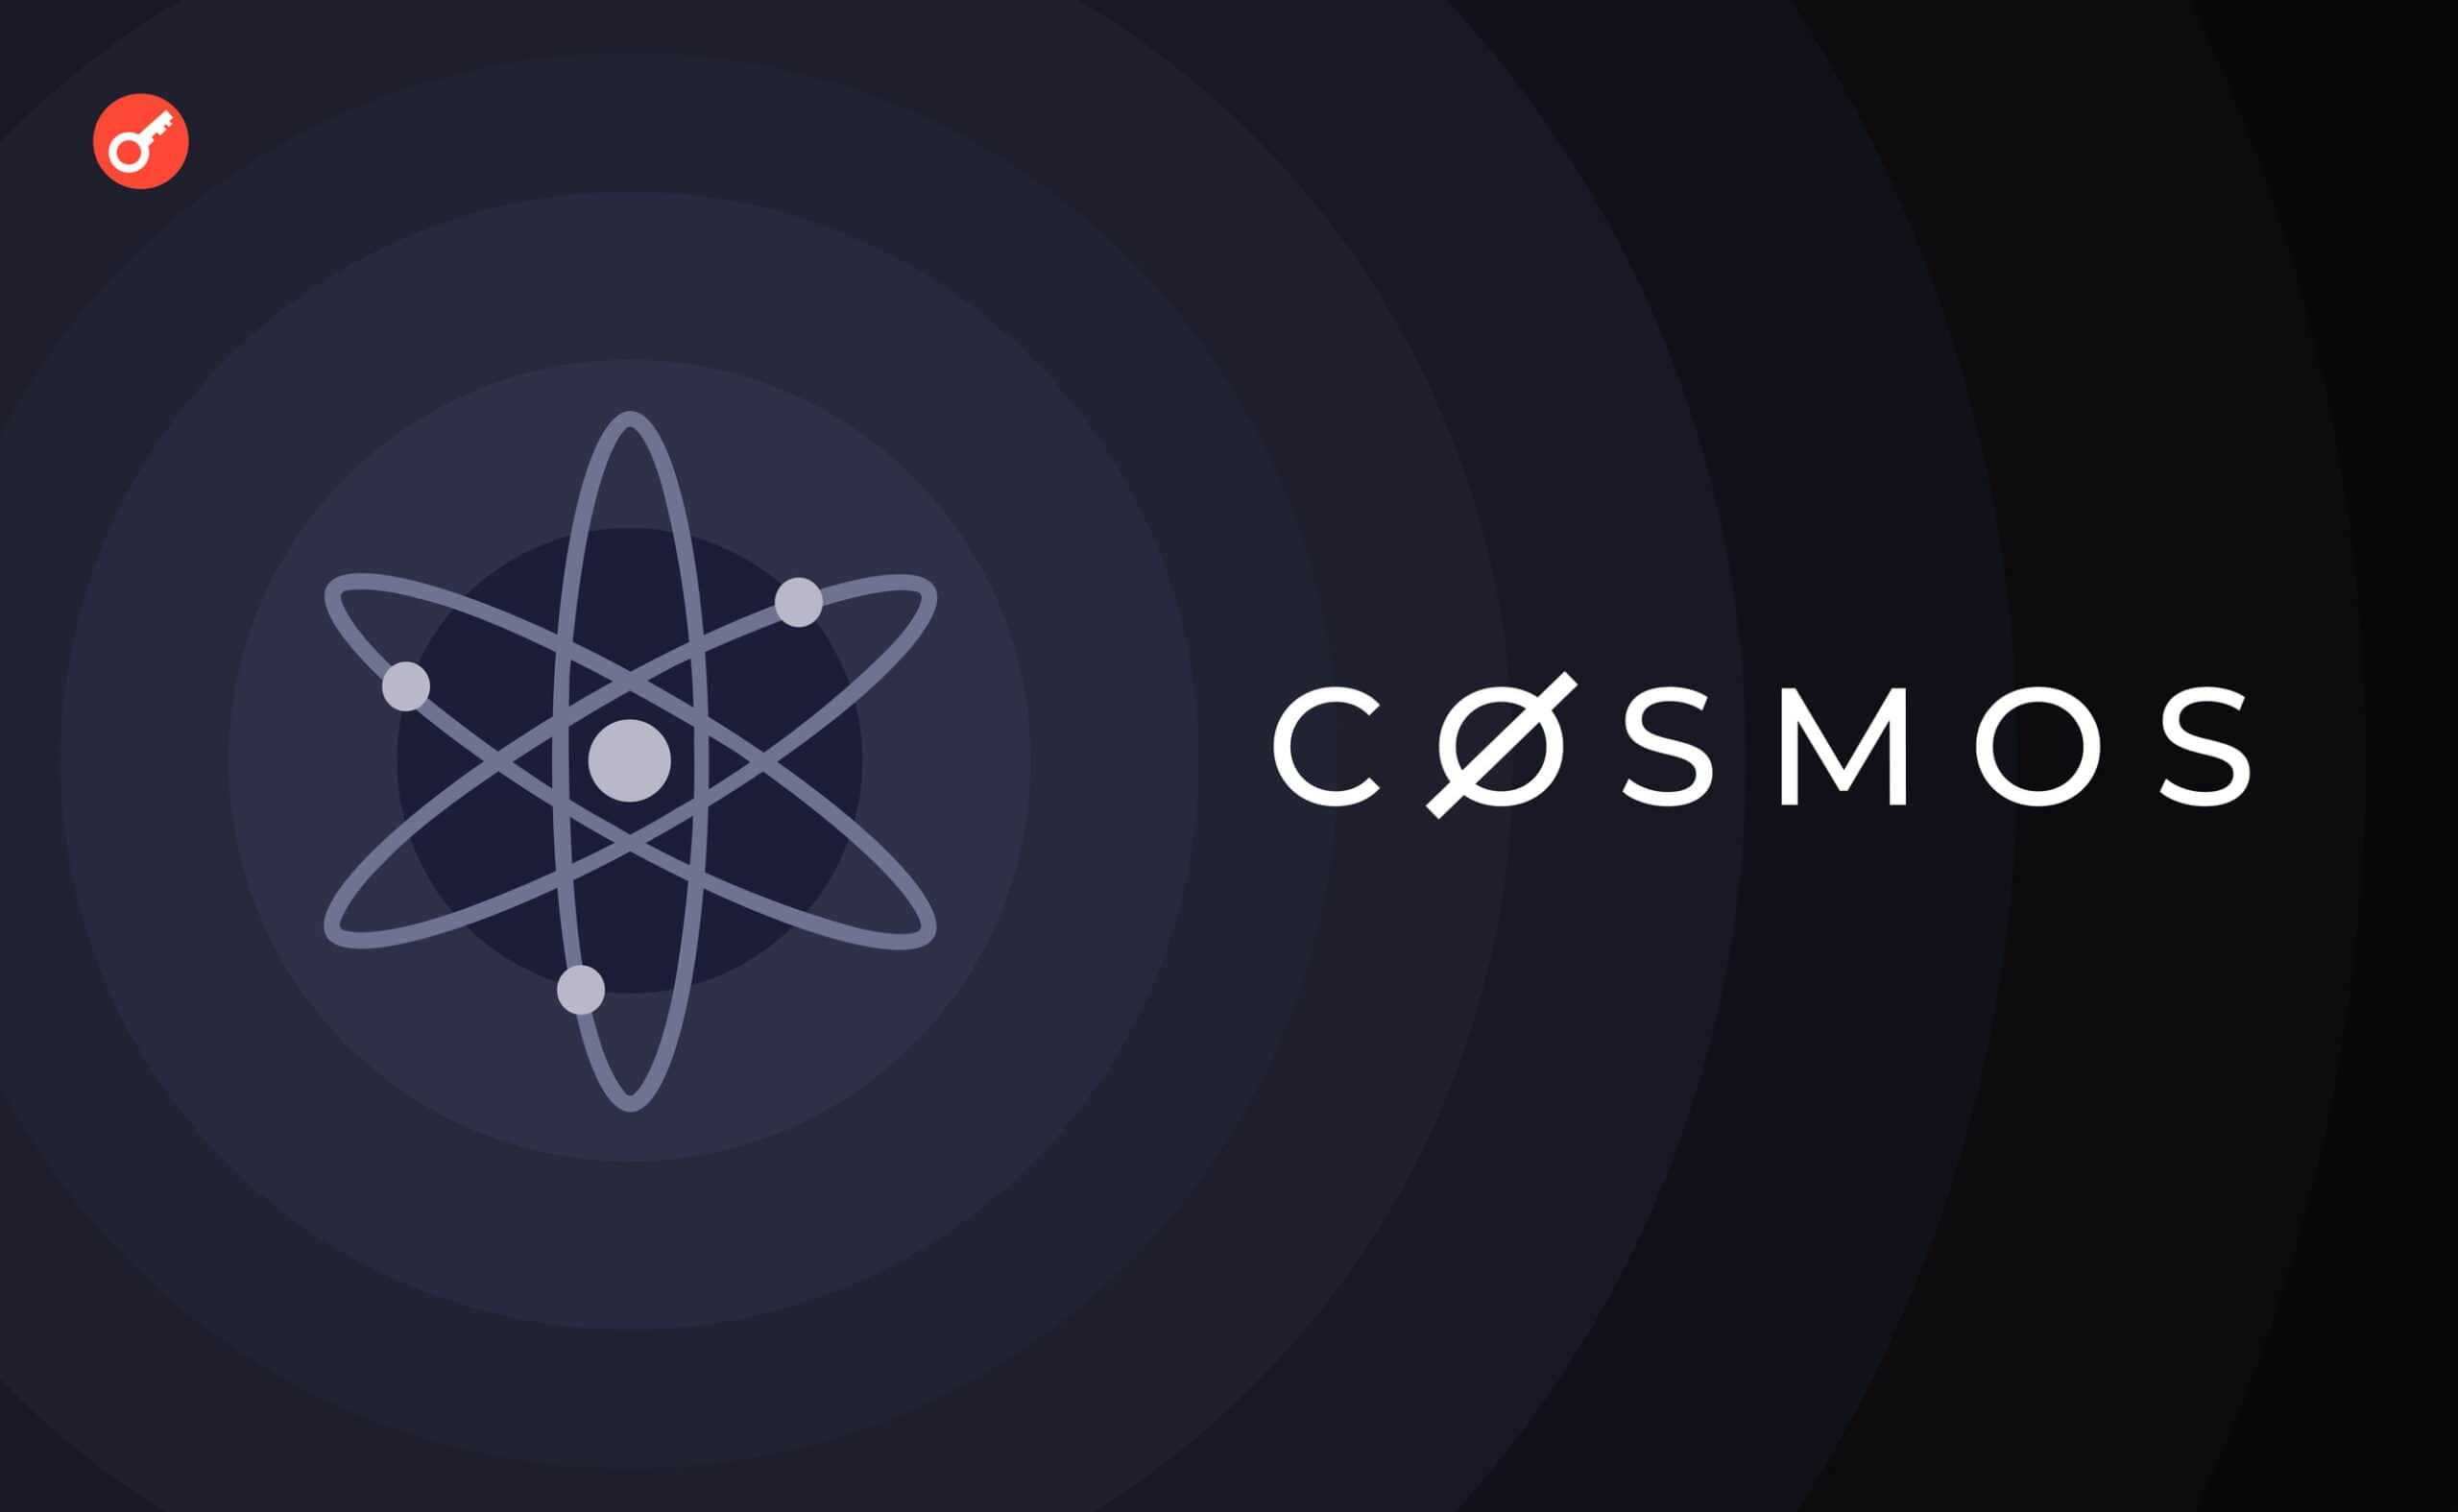 Założyciel Cosmos zaproponował hardfork sieci. Cena ATOM spadła o ponad 4%. Główny kolaż wiadomości.